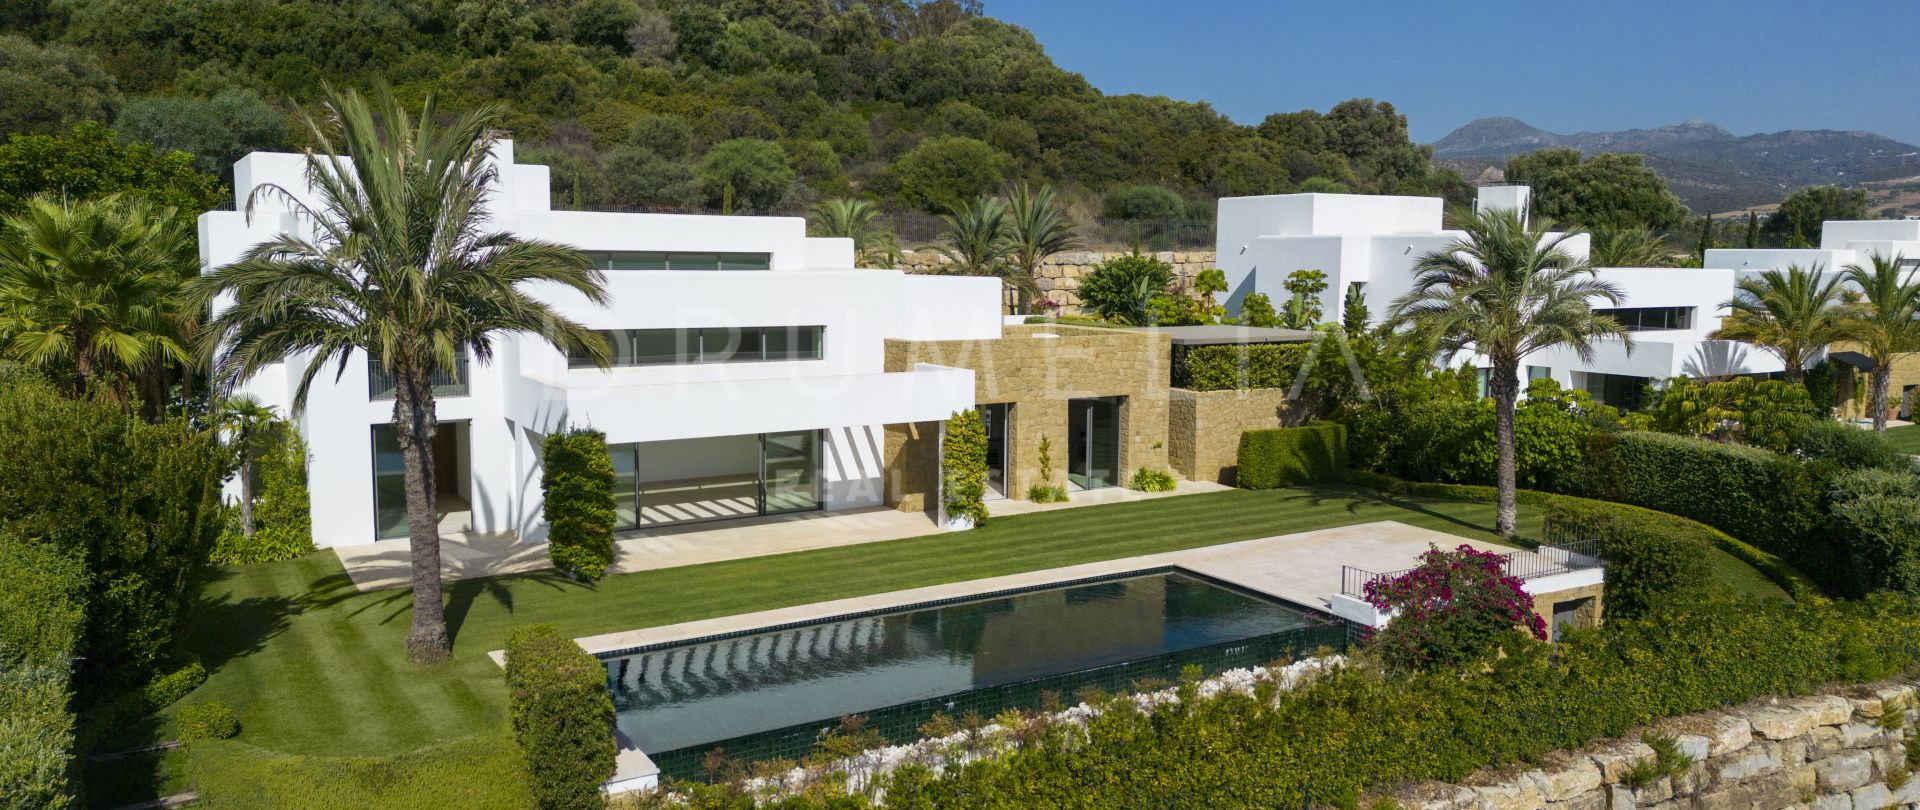 Gloednieuwe luxe villa aan de golfbaan met schitterend uitzicht en Ibiza-stijl, Finca Cortesin, Casares.